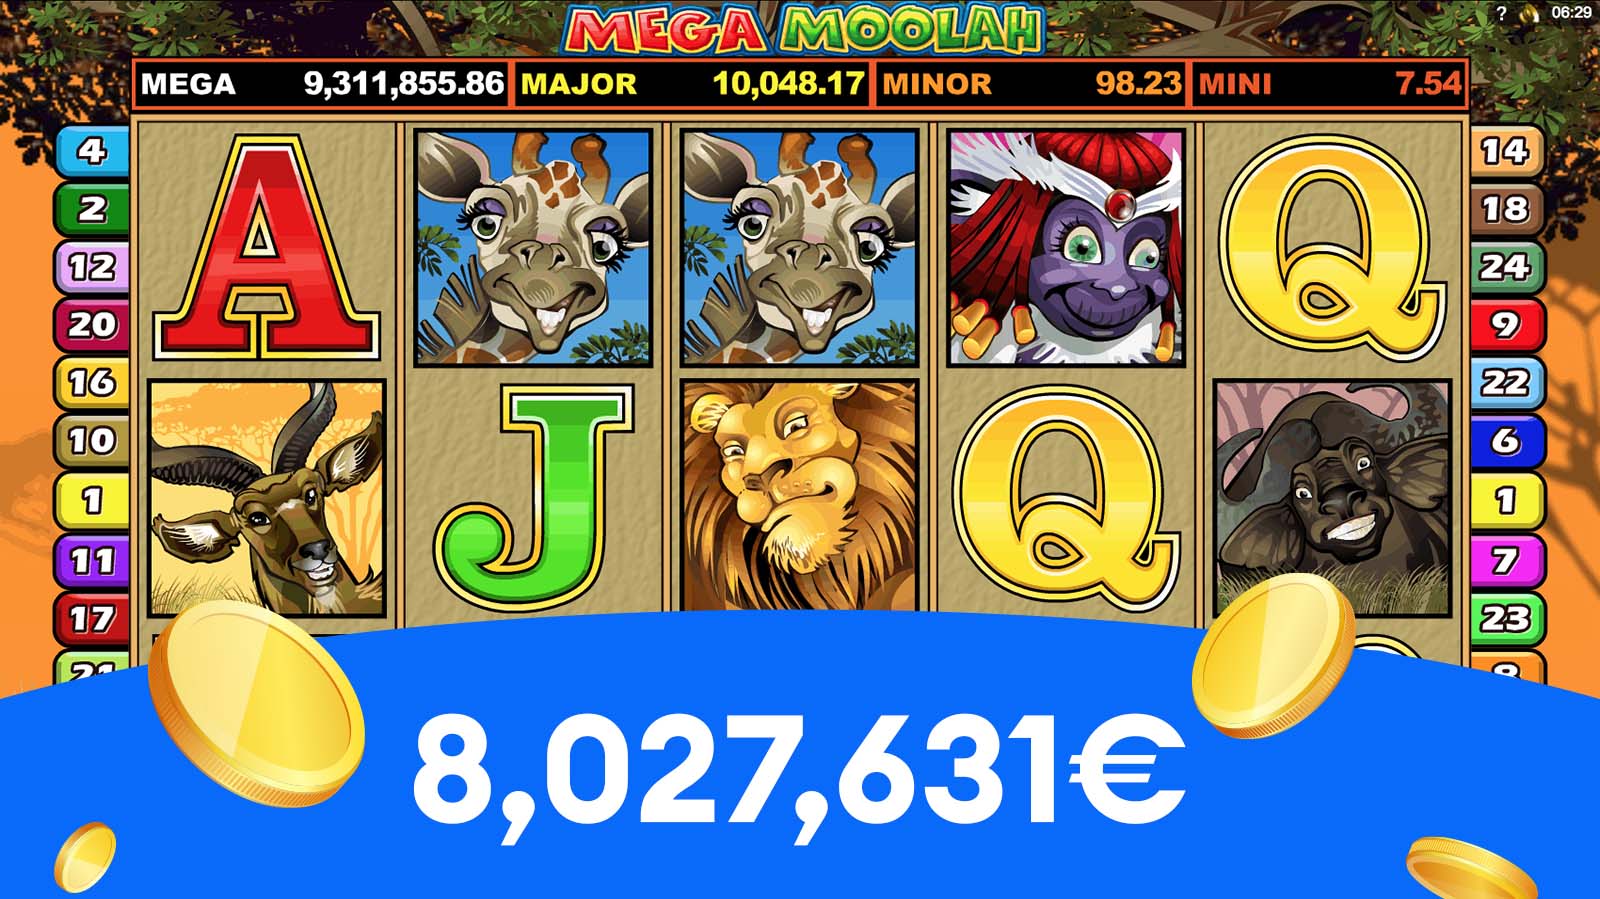 8,027,631€ la Mega Moolah